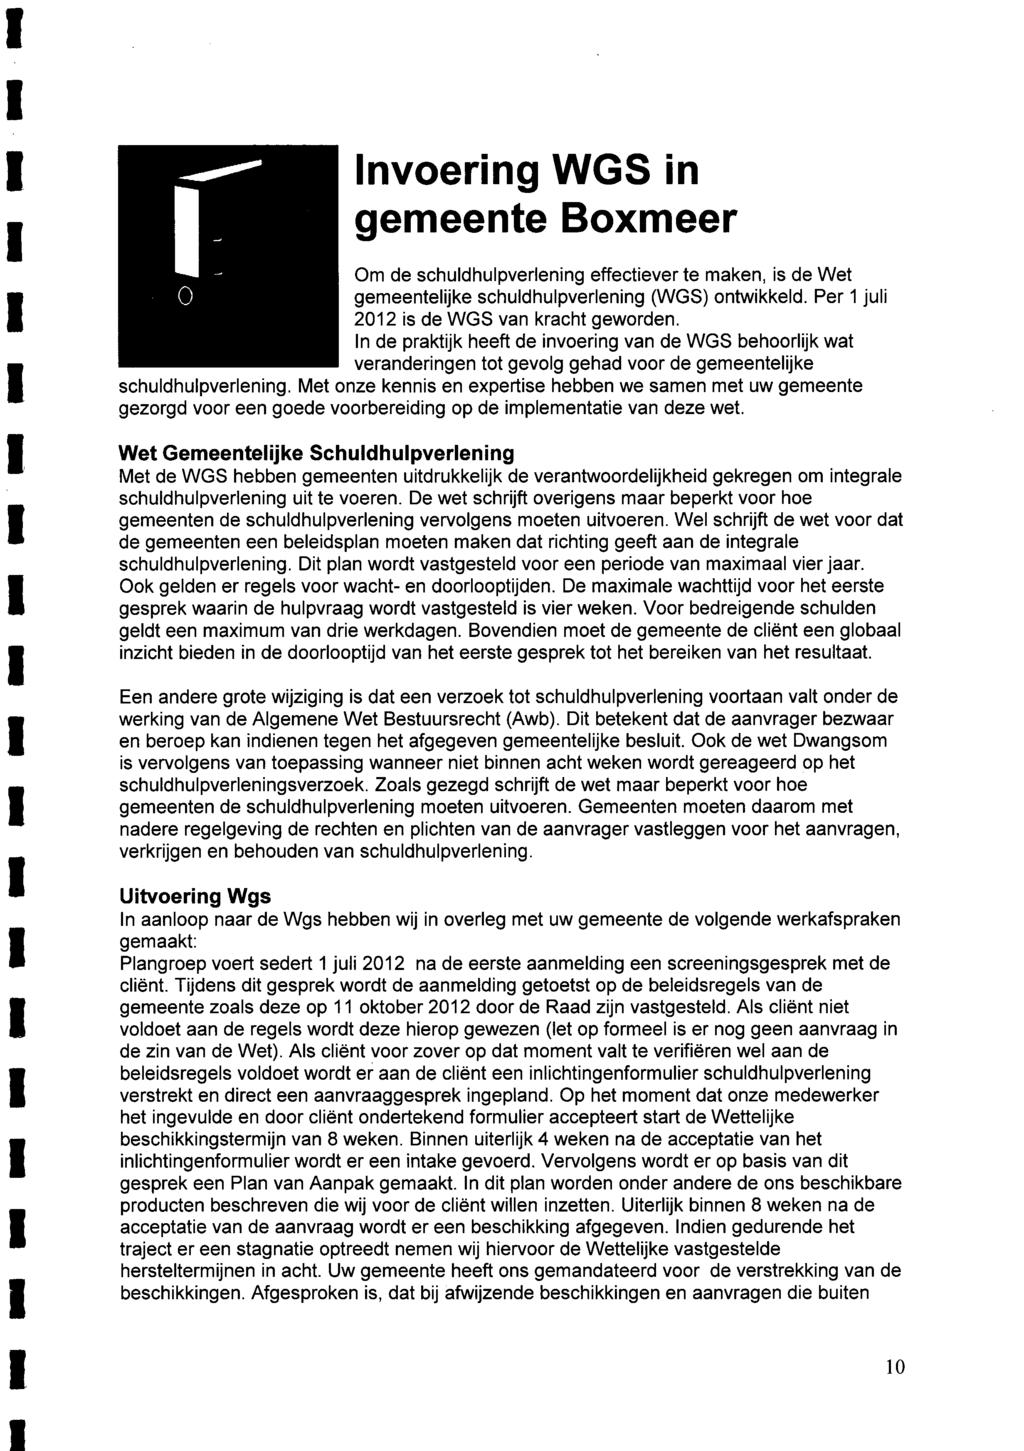 Invoering WGS in gemeente Boxmeer Om de schuldhulpverlening effectiever te maken, is de Wet gemeentelijke schuldhulpverlening (WGS) ontwikkeld. Per 1 juli 2012 is de WGS van kracht geworden.